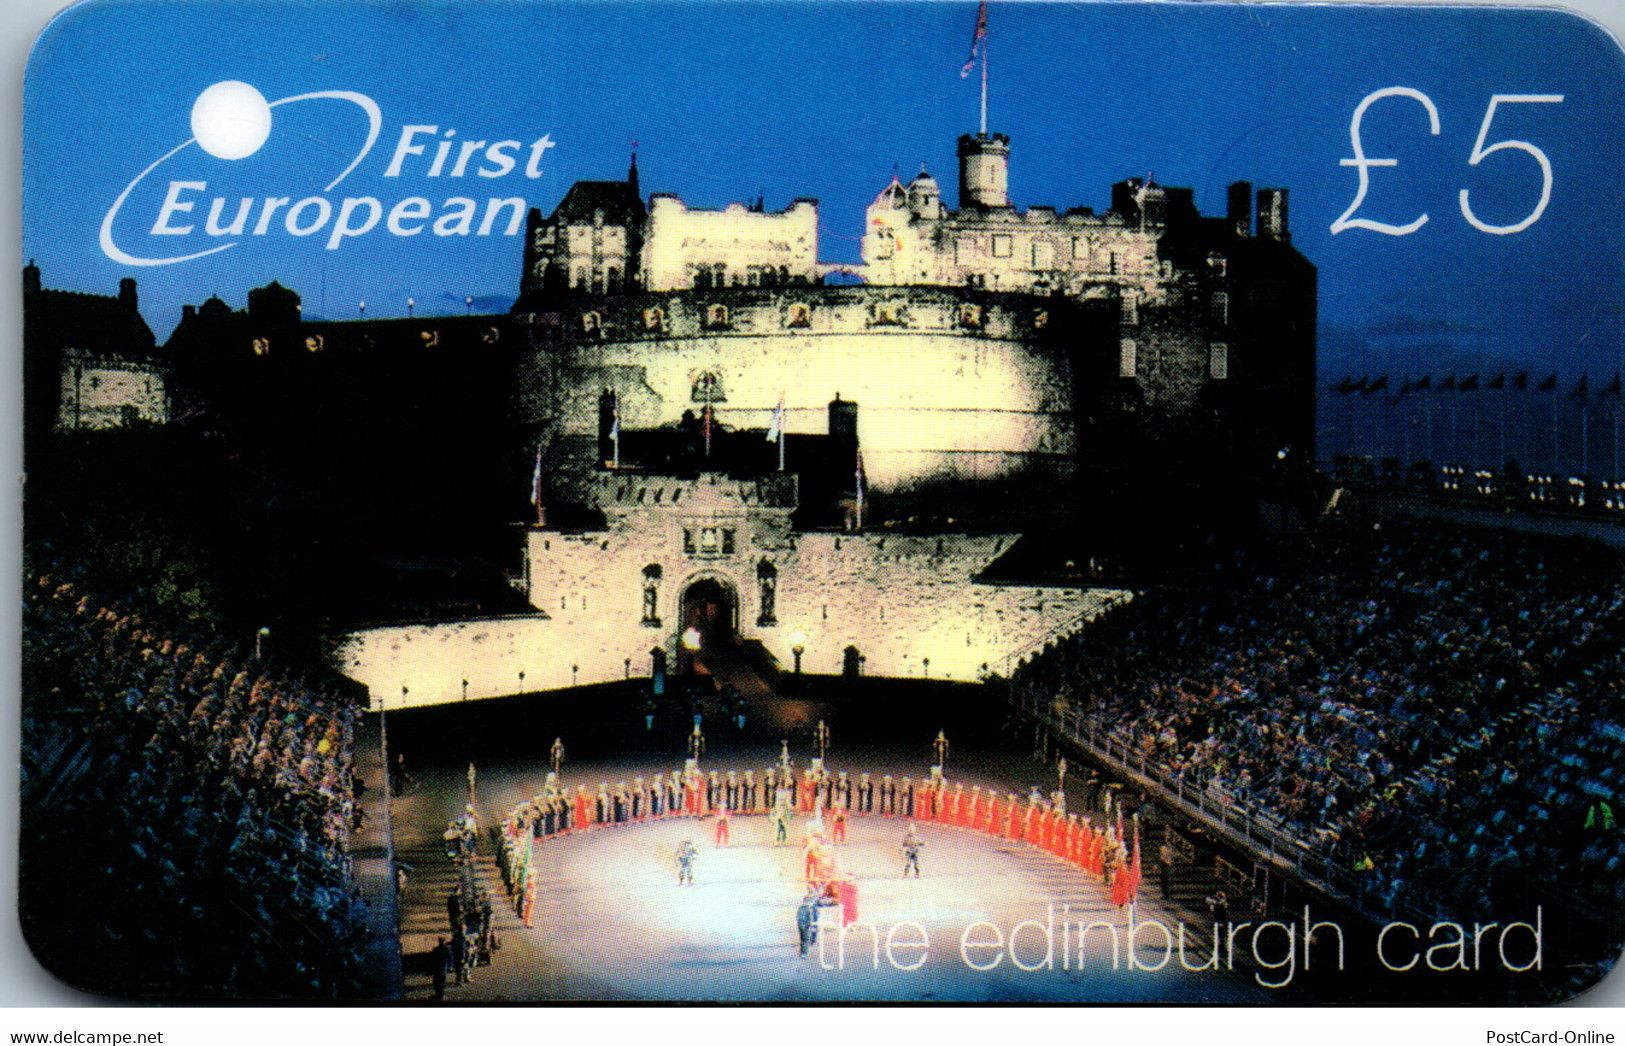 29246 - Großbritannien - First European , The Edinburgh Card , Prepaid - BT Global Cards (Prepaid)